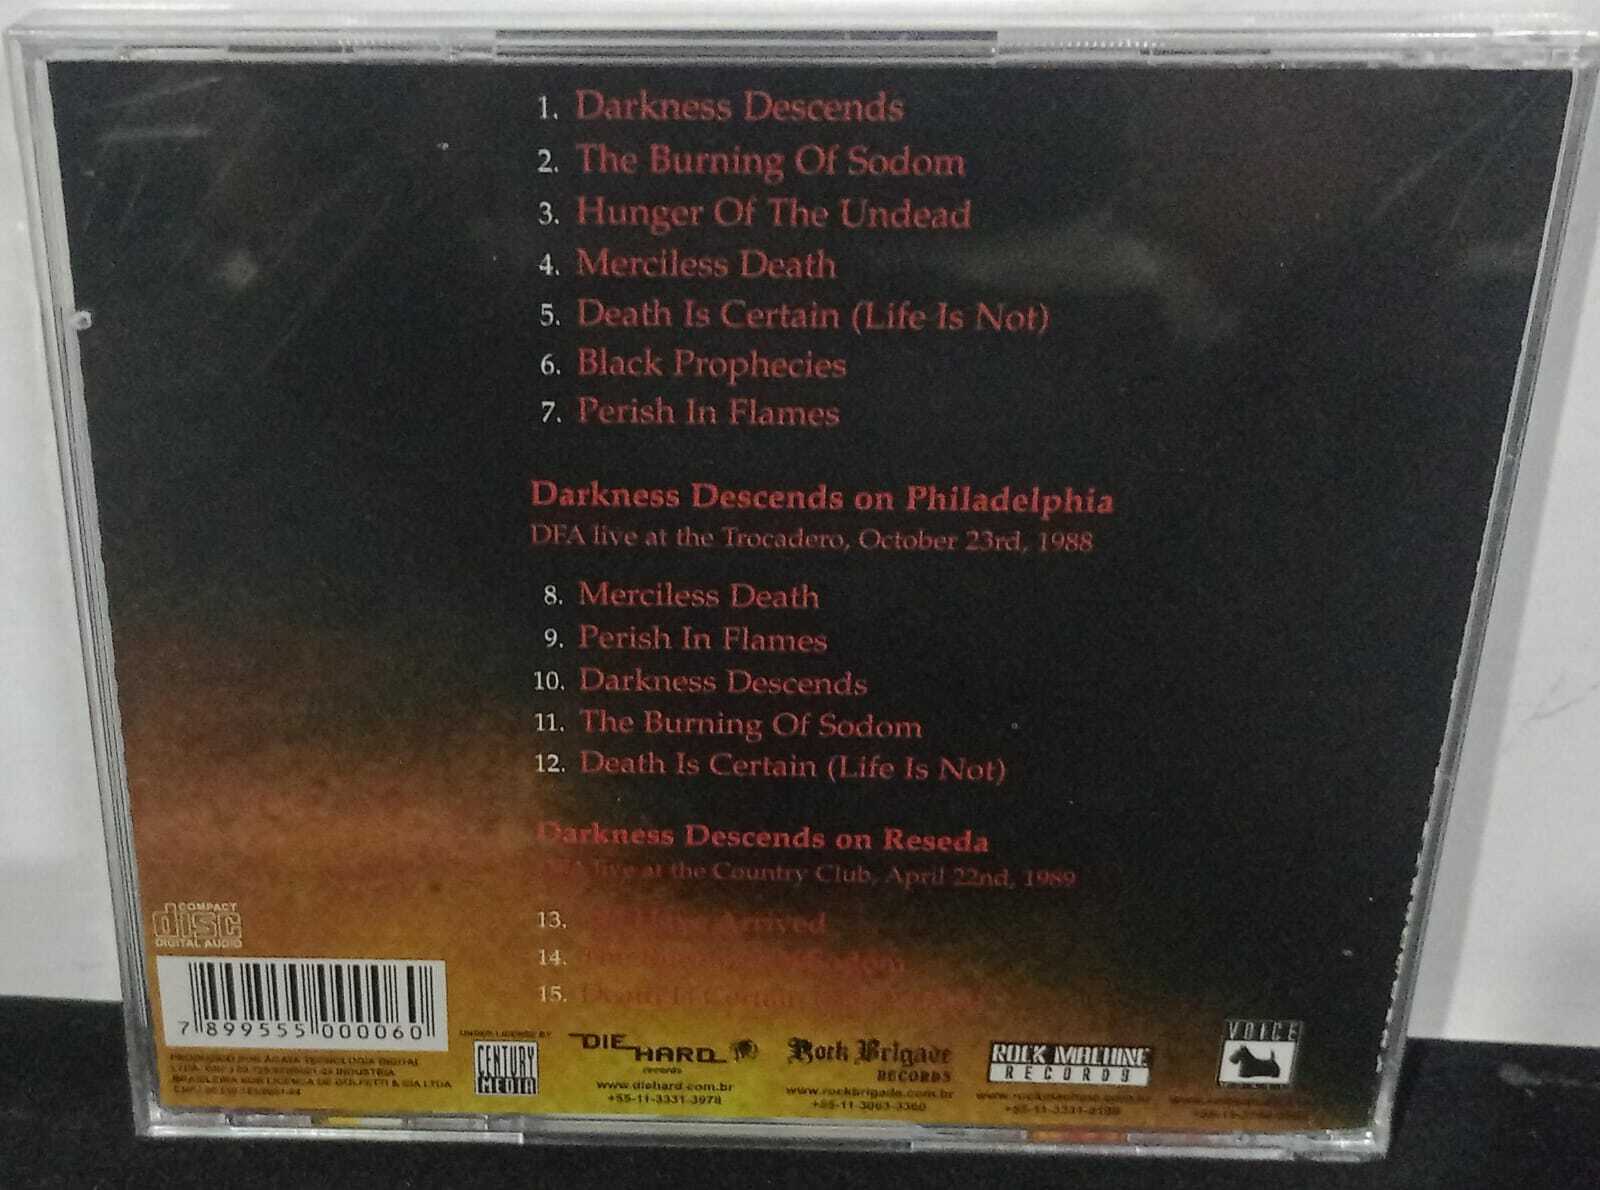 CD - Dark Angel - Darkness Descends (Lacrado)